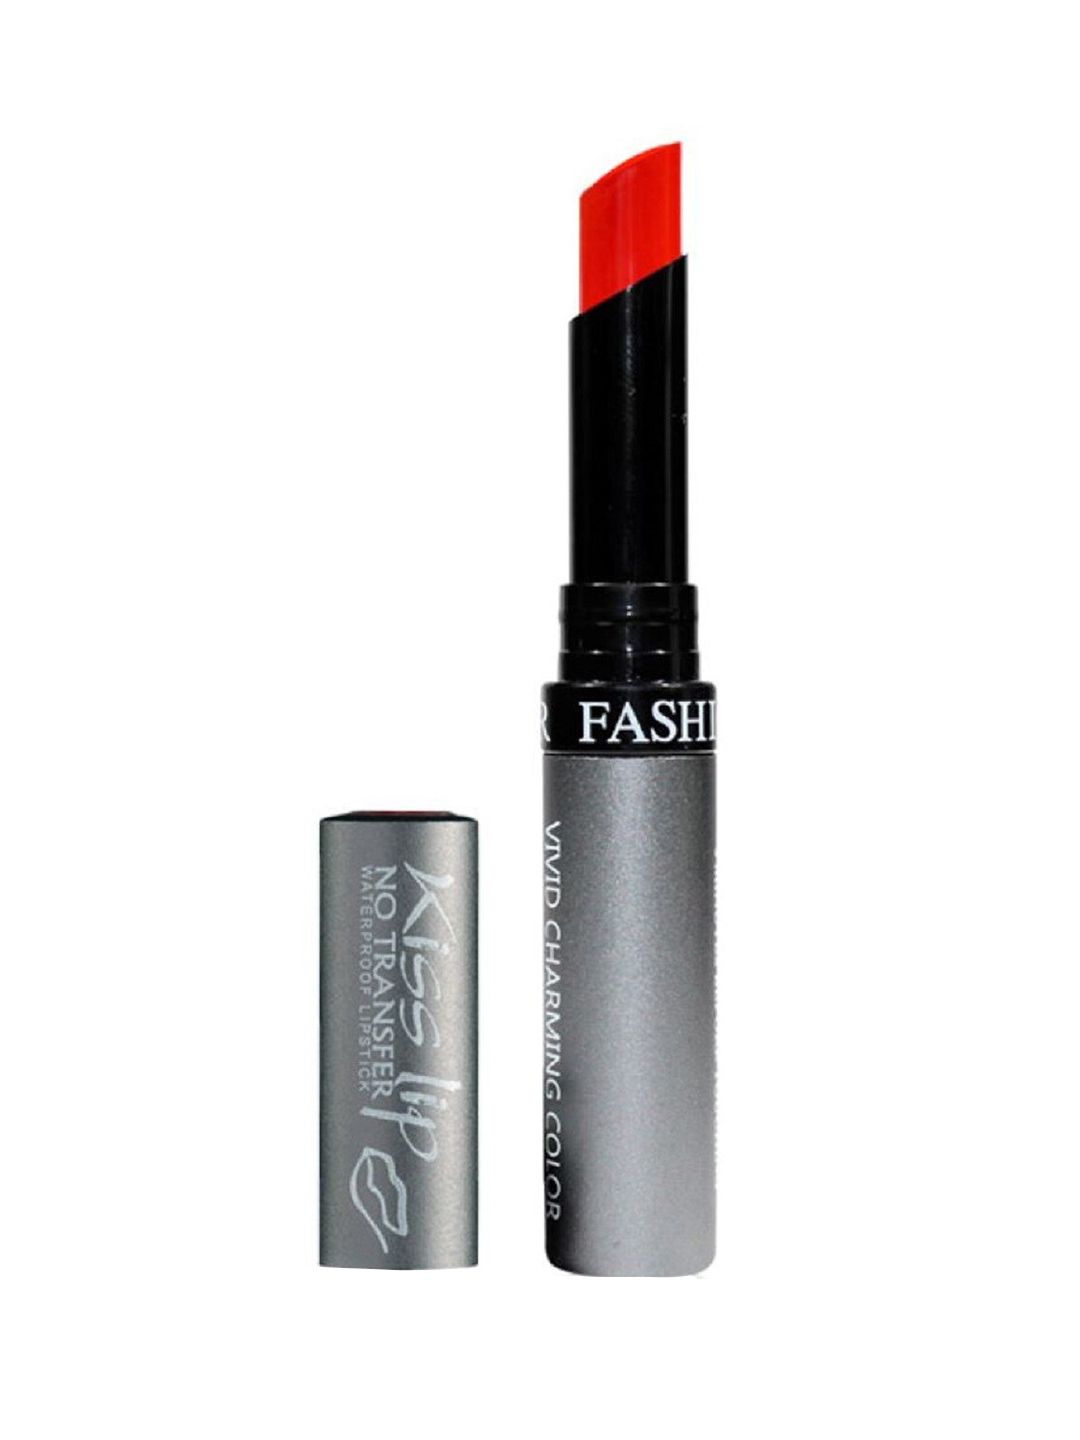 Fashion Colour Kiss Lip Vivid Charming Color No Transfer Lipstick - Dark Red 59 Price in India